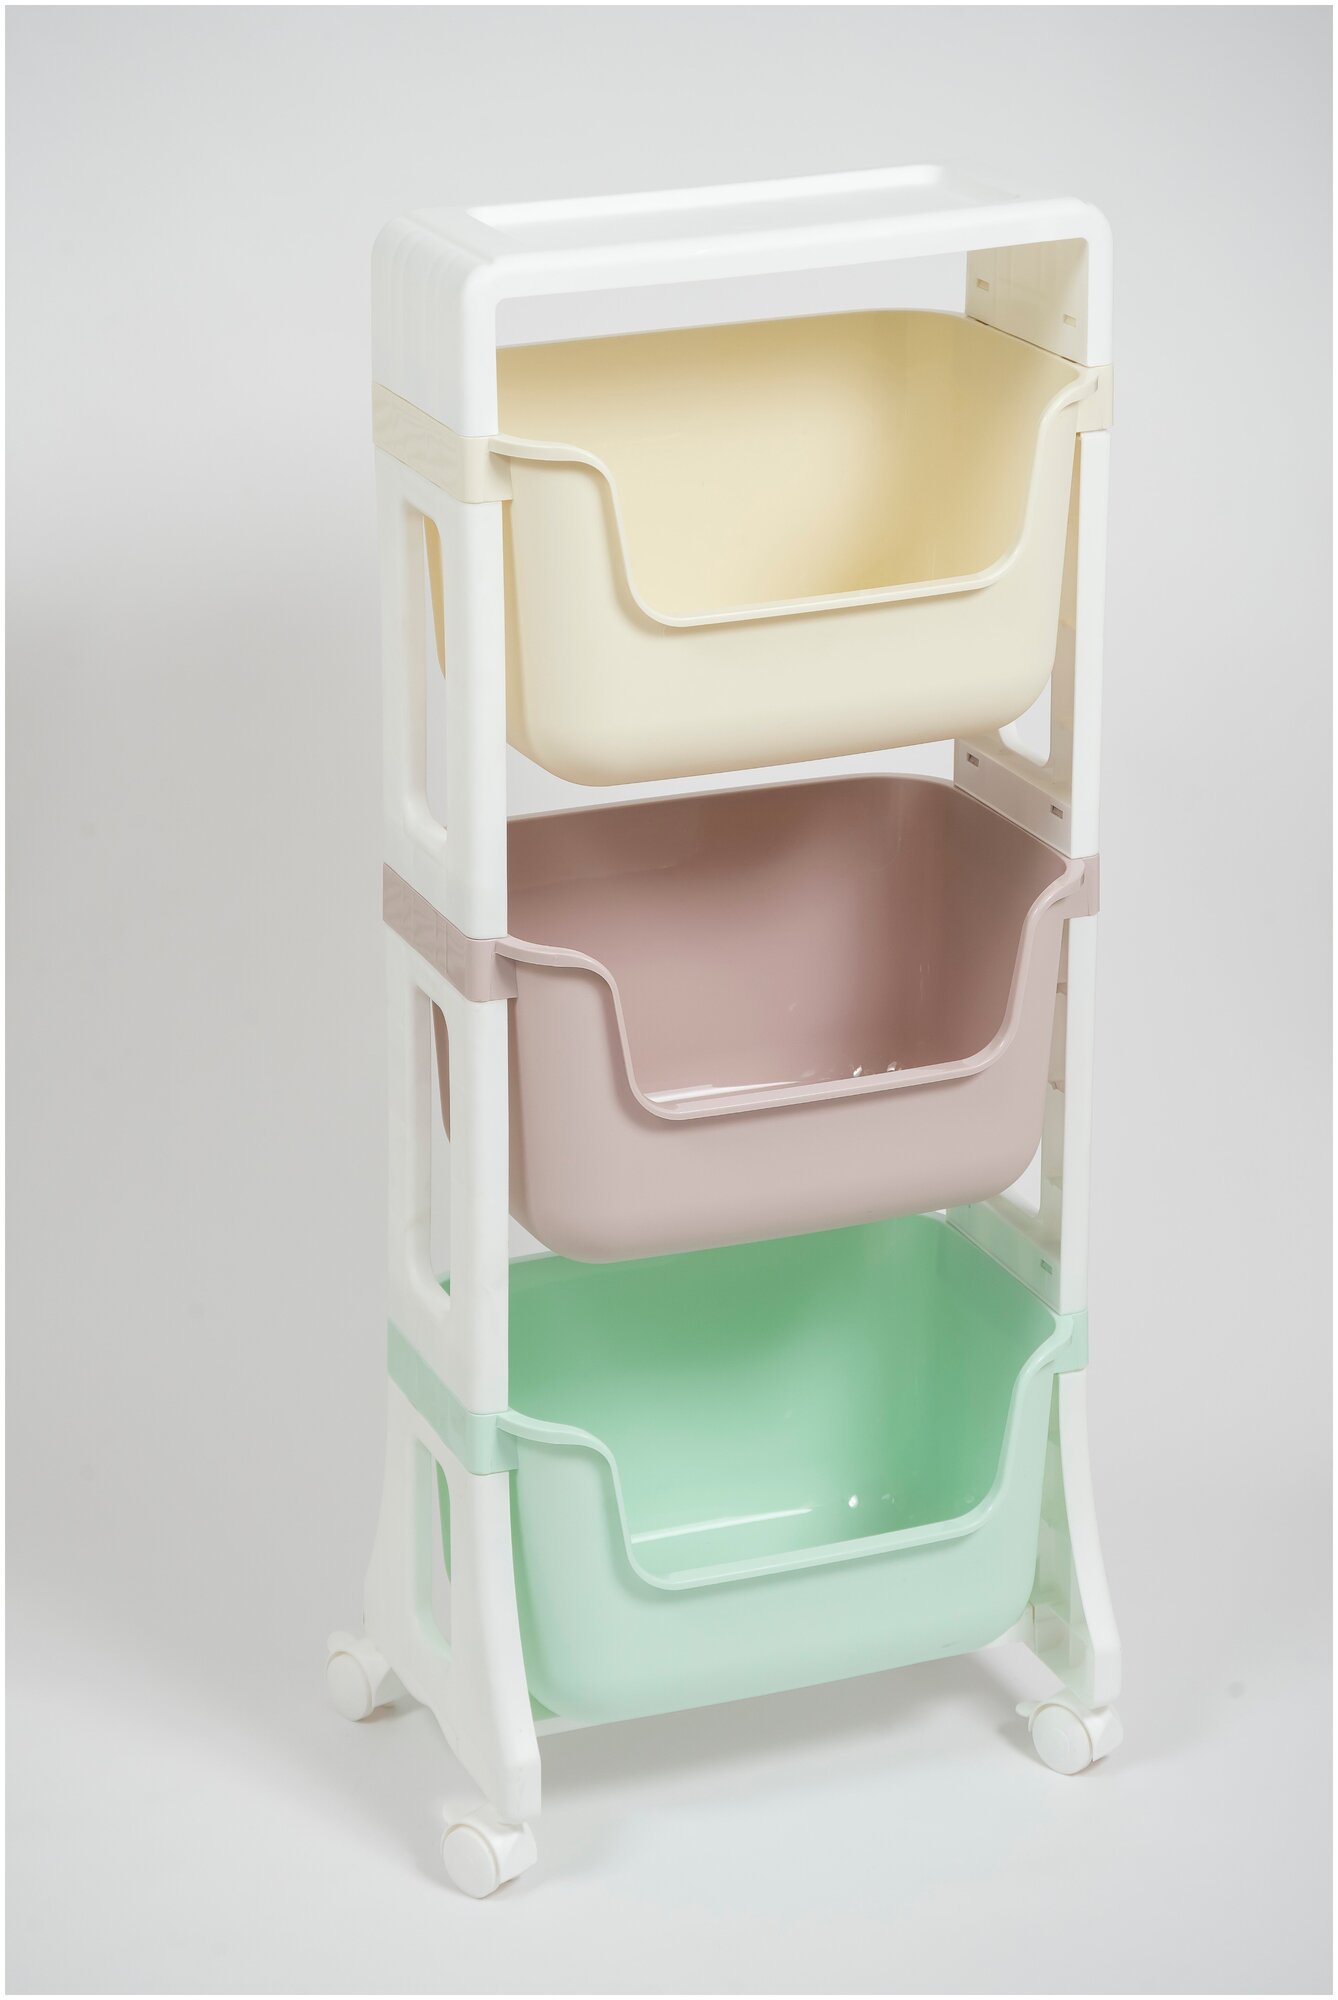 Этажерка на колесиках Джуниор 3 яруса, цвет микс / детский пластиковый органайзер для хранения / подставка напольная на колесах для кухни и ванной